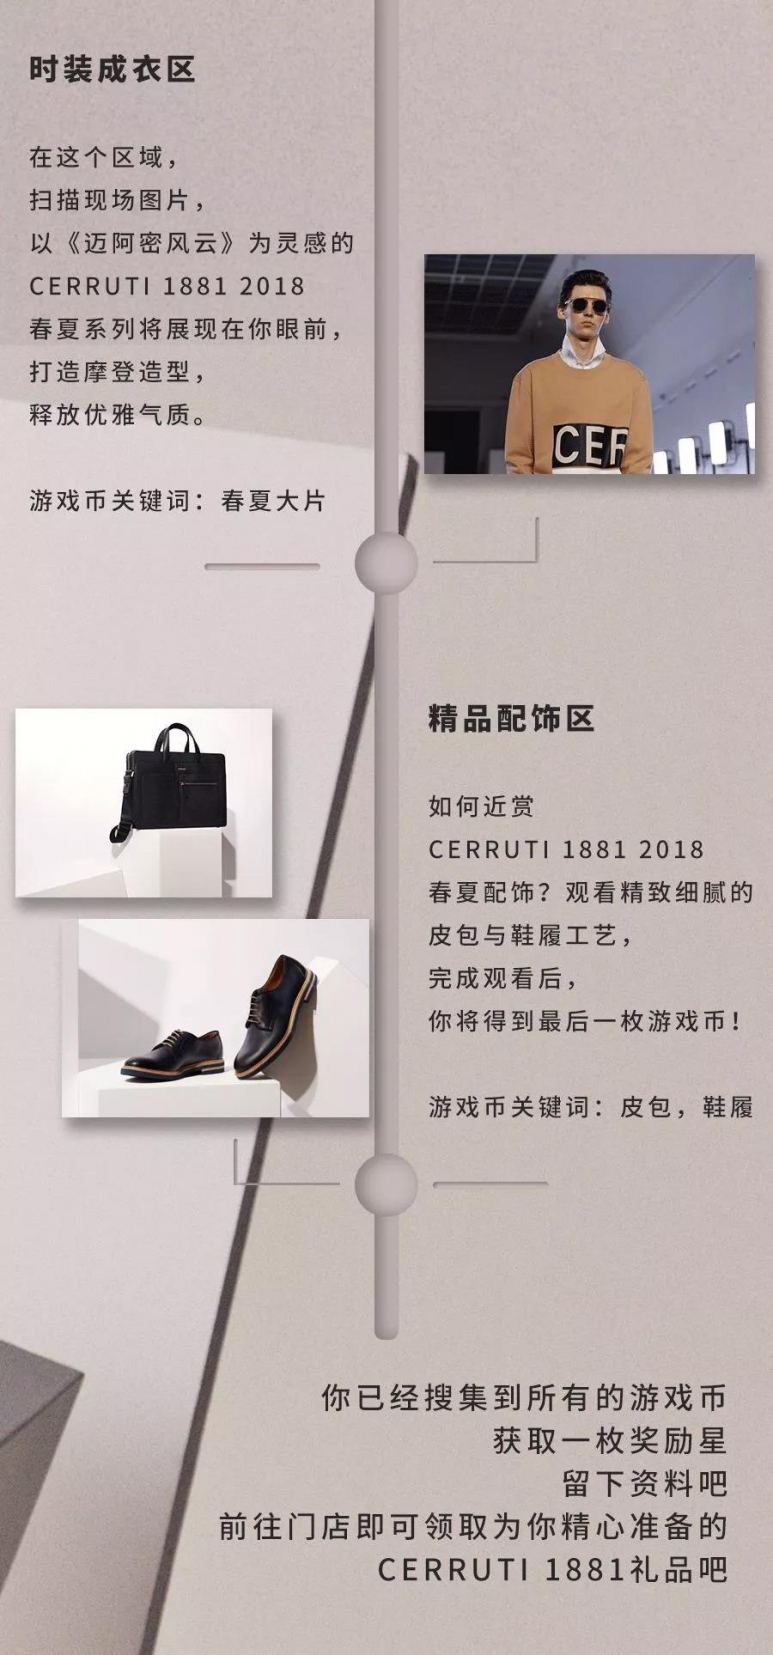 WeChat Image_20180323162717.jpg